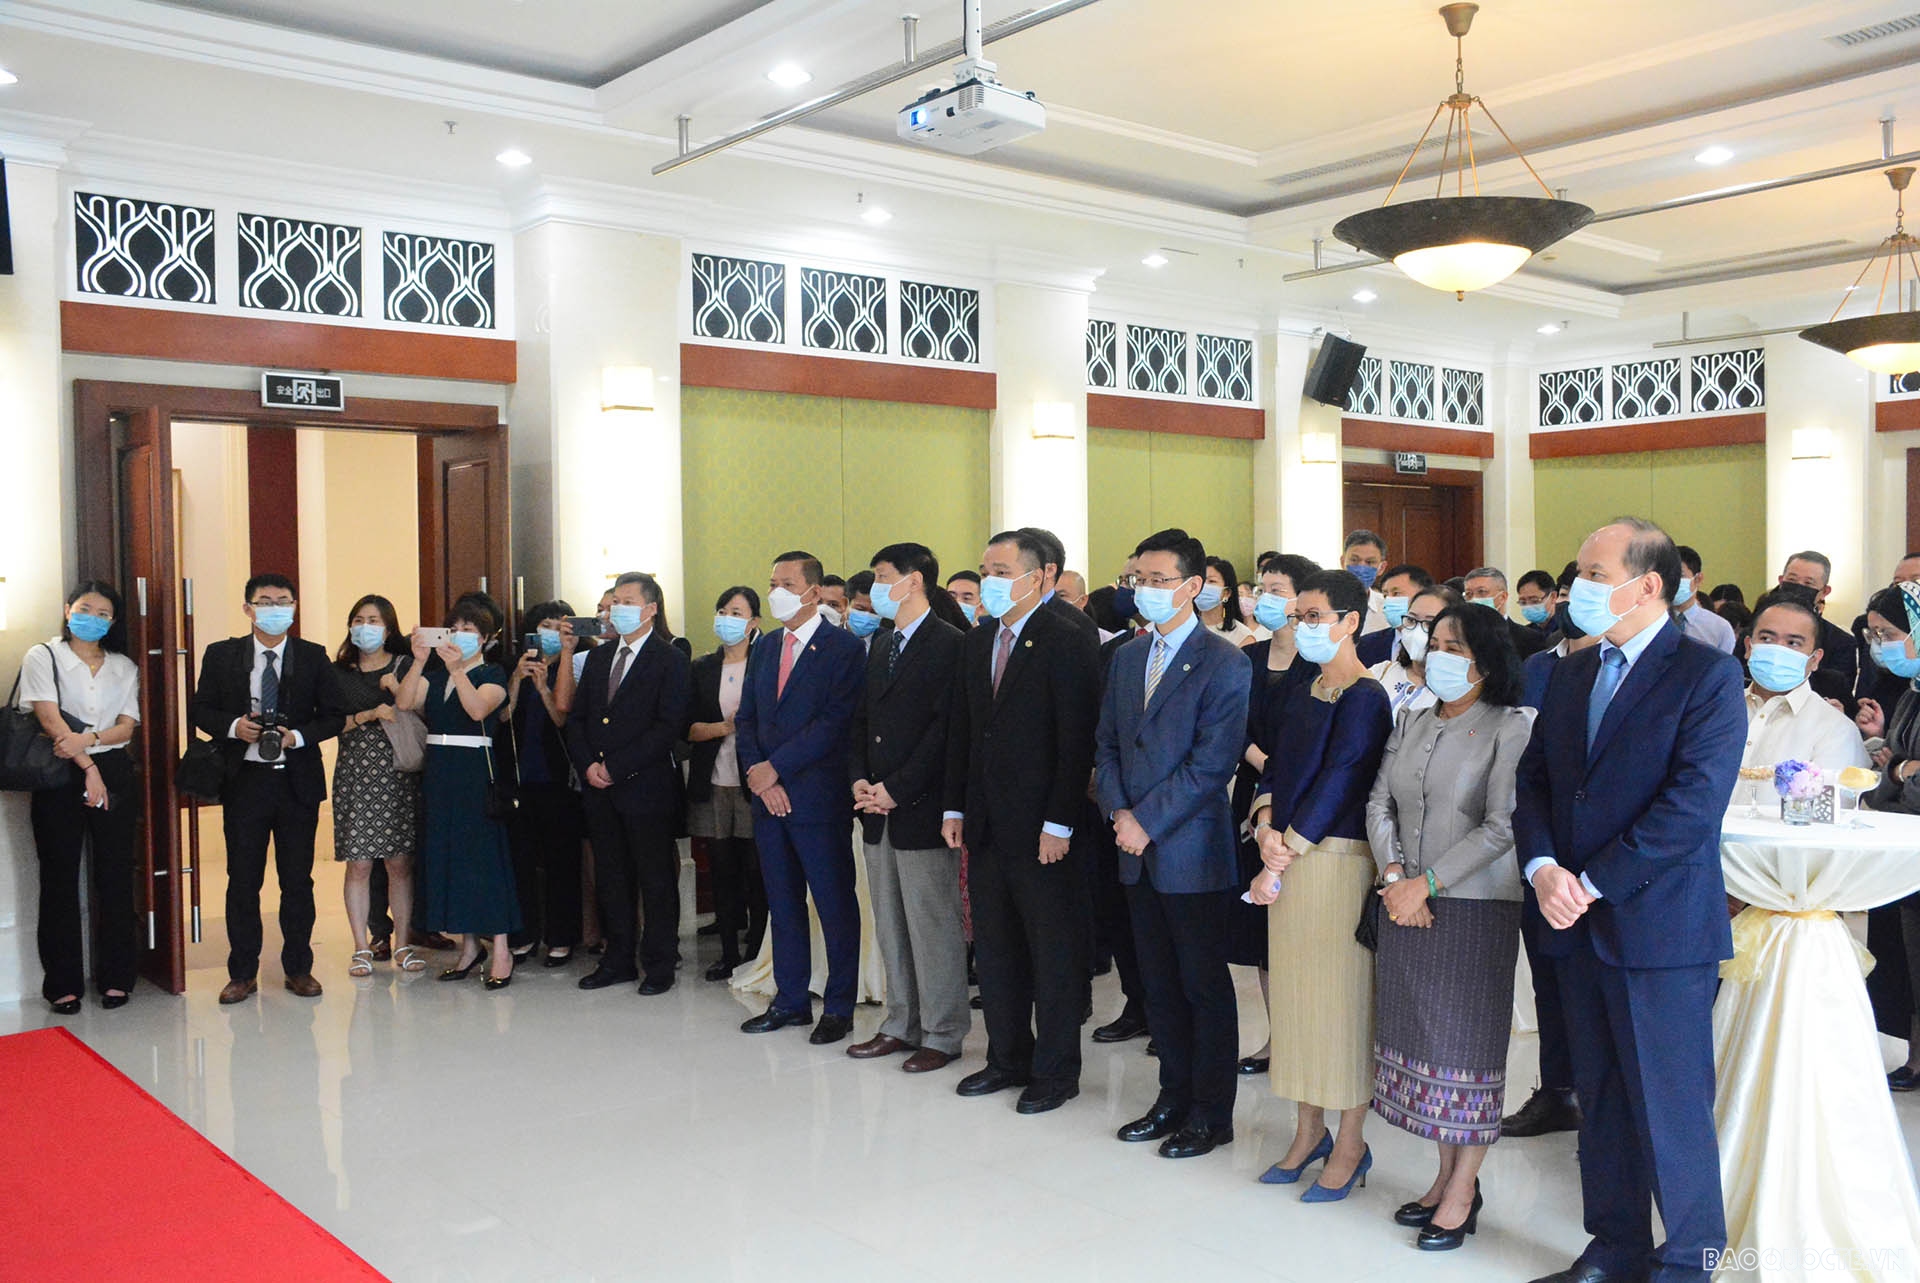 Đại diện chính quyền và các cơ quan tỉnh Quảng Đông, thành phố Quảng Châu, Ủy ban xúc tiến thương mại quốc tế cùng cộng đồng doanh nghiệp các nước ASEAN và Trung Quốc đã tham dự buổi lễ.